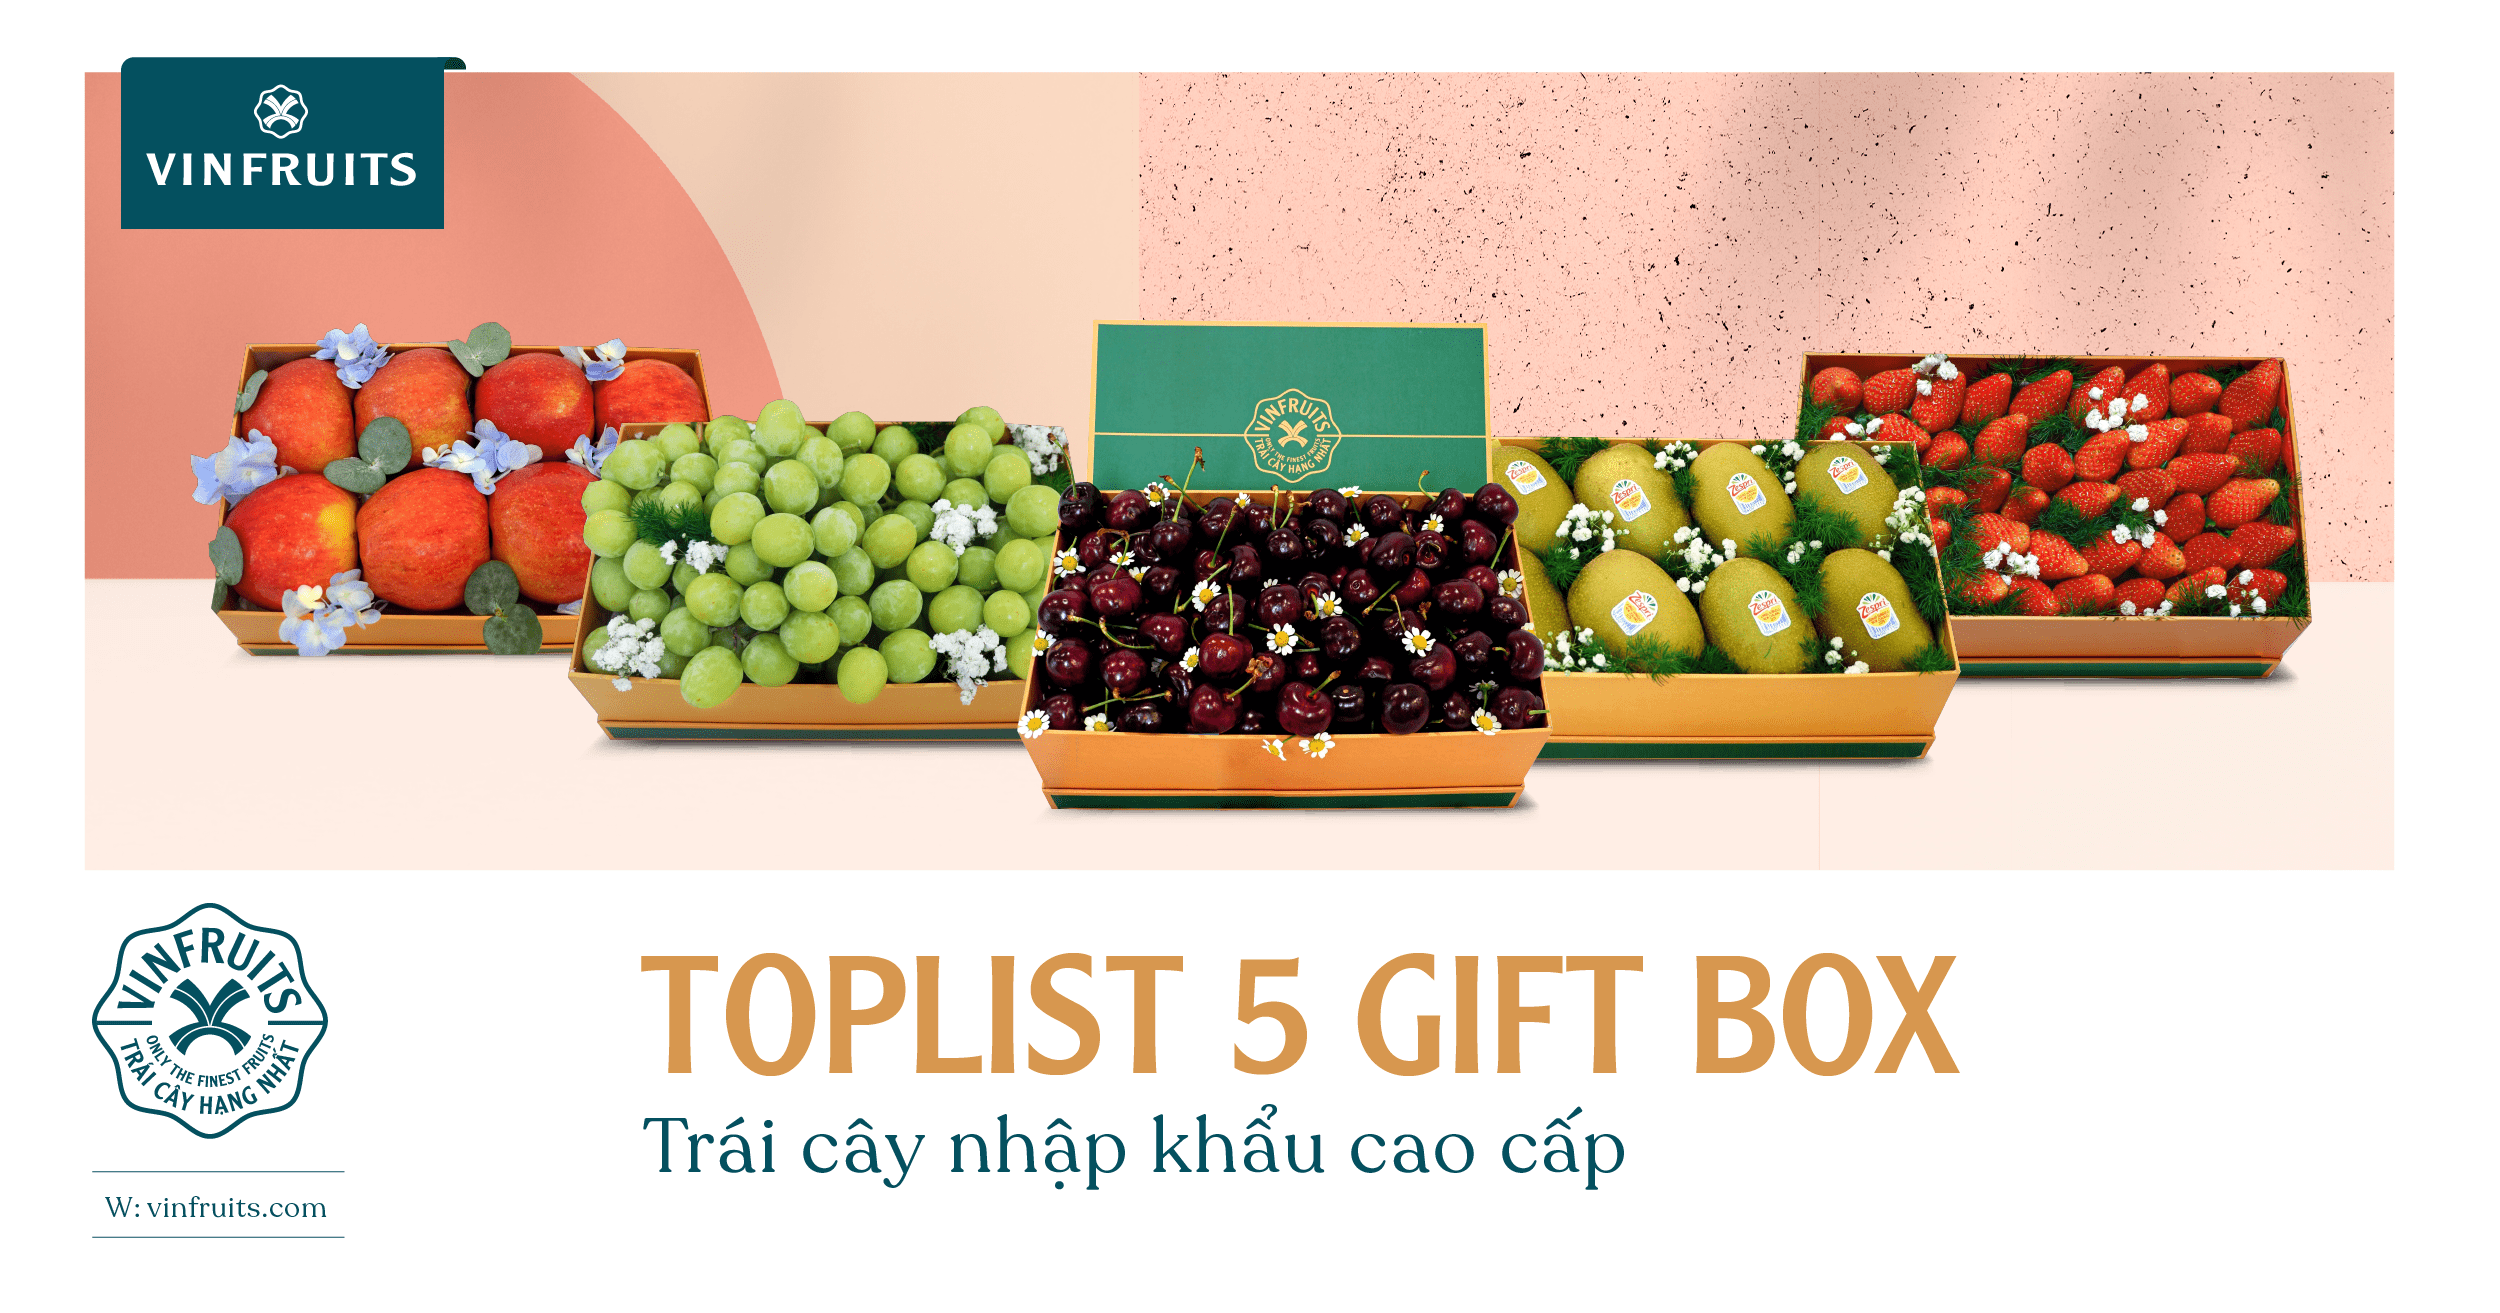 Top gift box trái cây tặng đối tác và đồng nghiệp